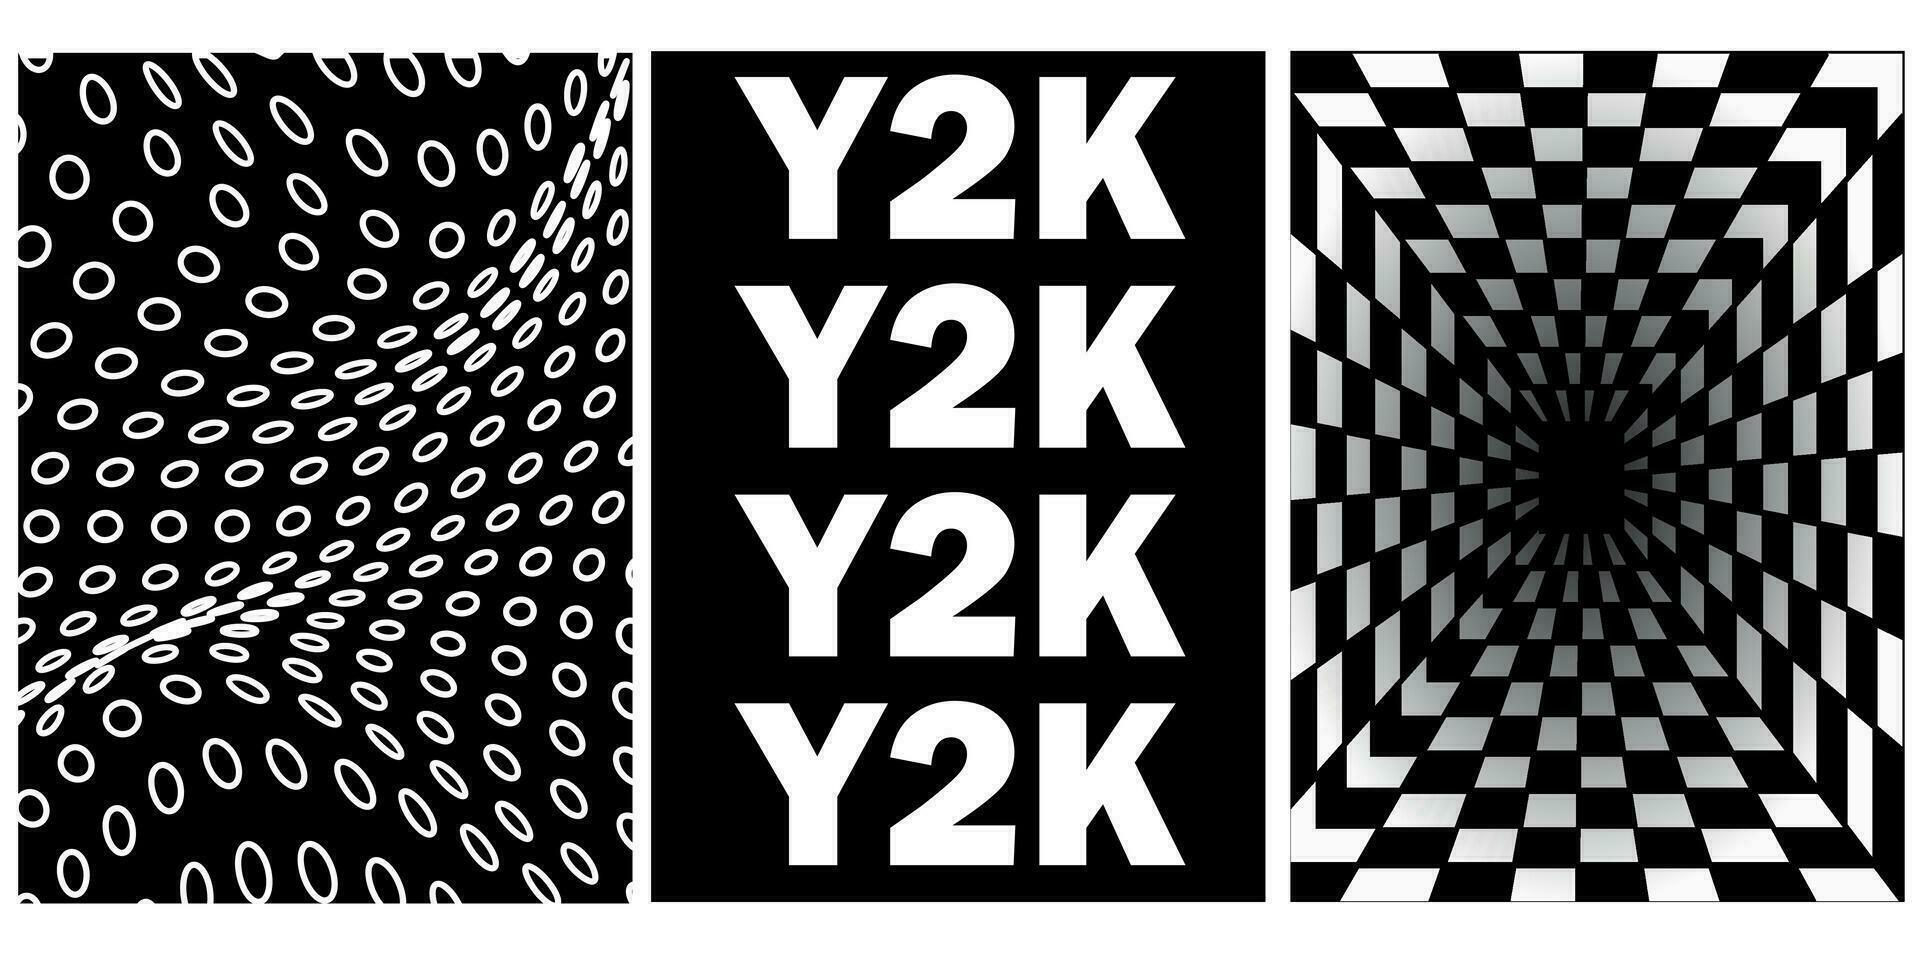 uppsättning av abstrakt estetisk y2k geometrisk element och 3d trådmodell former. svart och vit retro design element. vektor illustration för social media eller affischer.